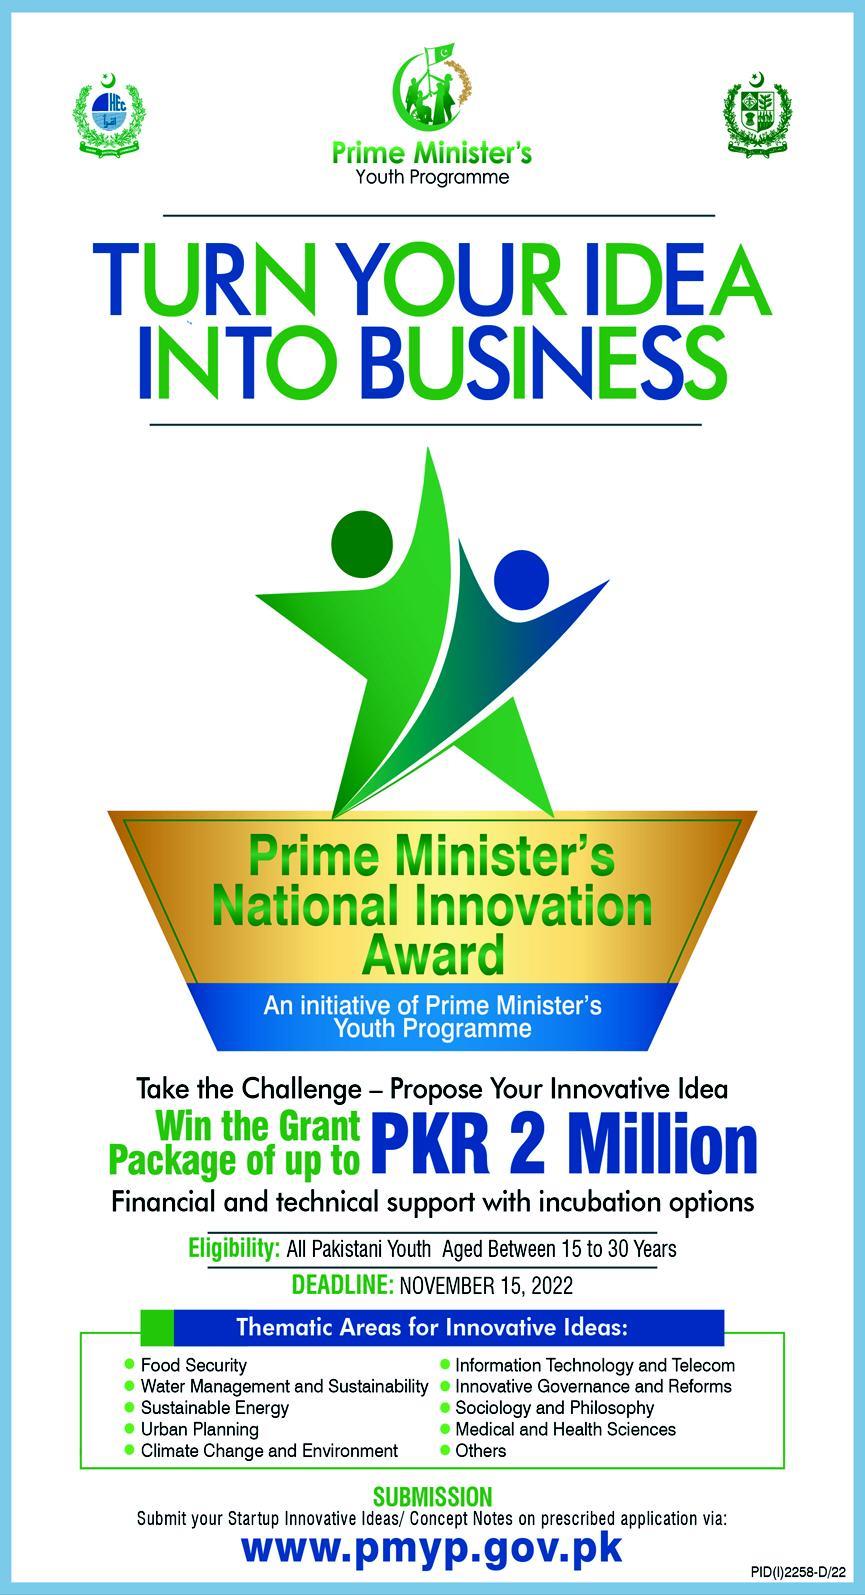 Prime Minister’s national Innovation Award 2022